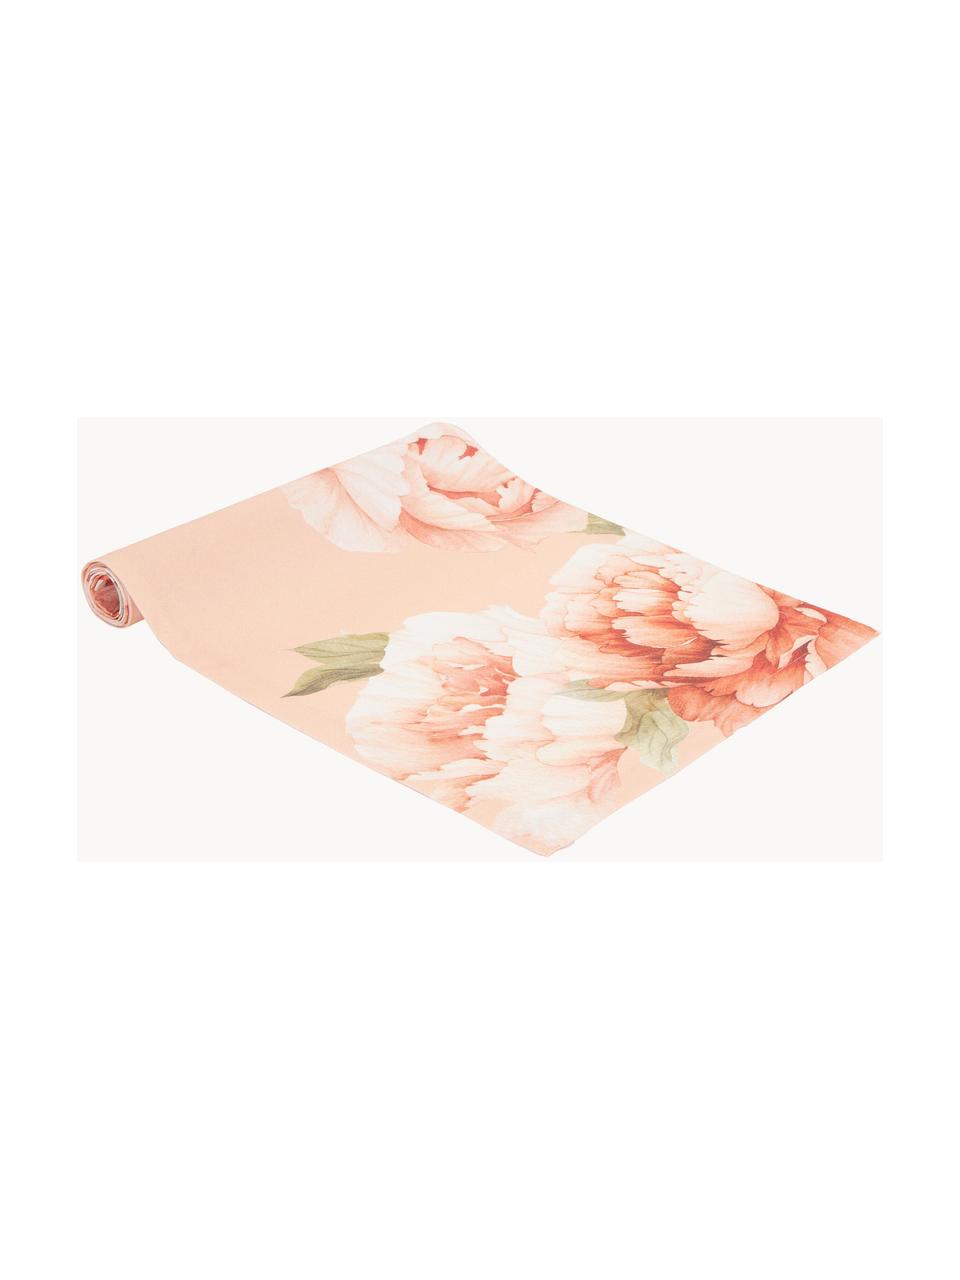 Runner da tavola in cotone con motivo floreale Peony, 100% cotone, Rosa con stampa floreale, Larg. 40 x Lung. 145 cm